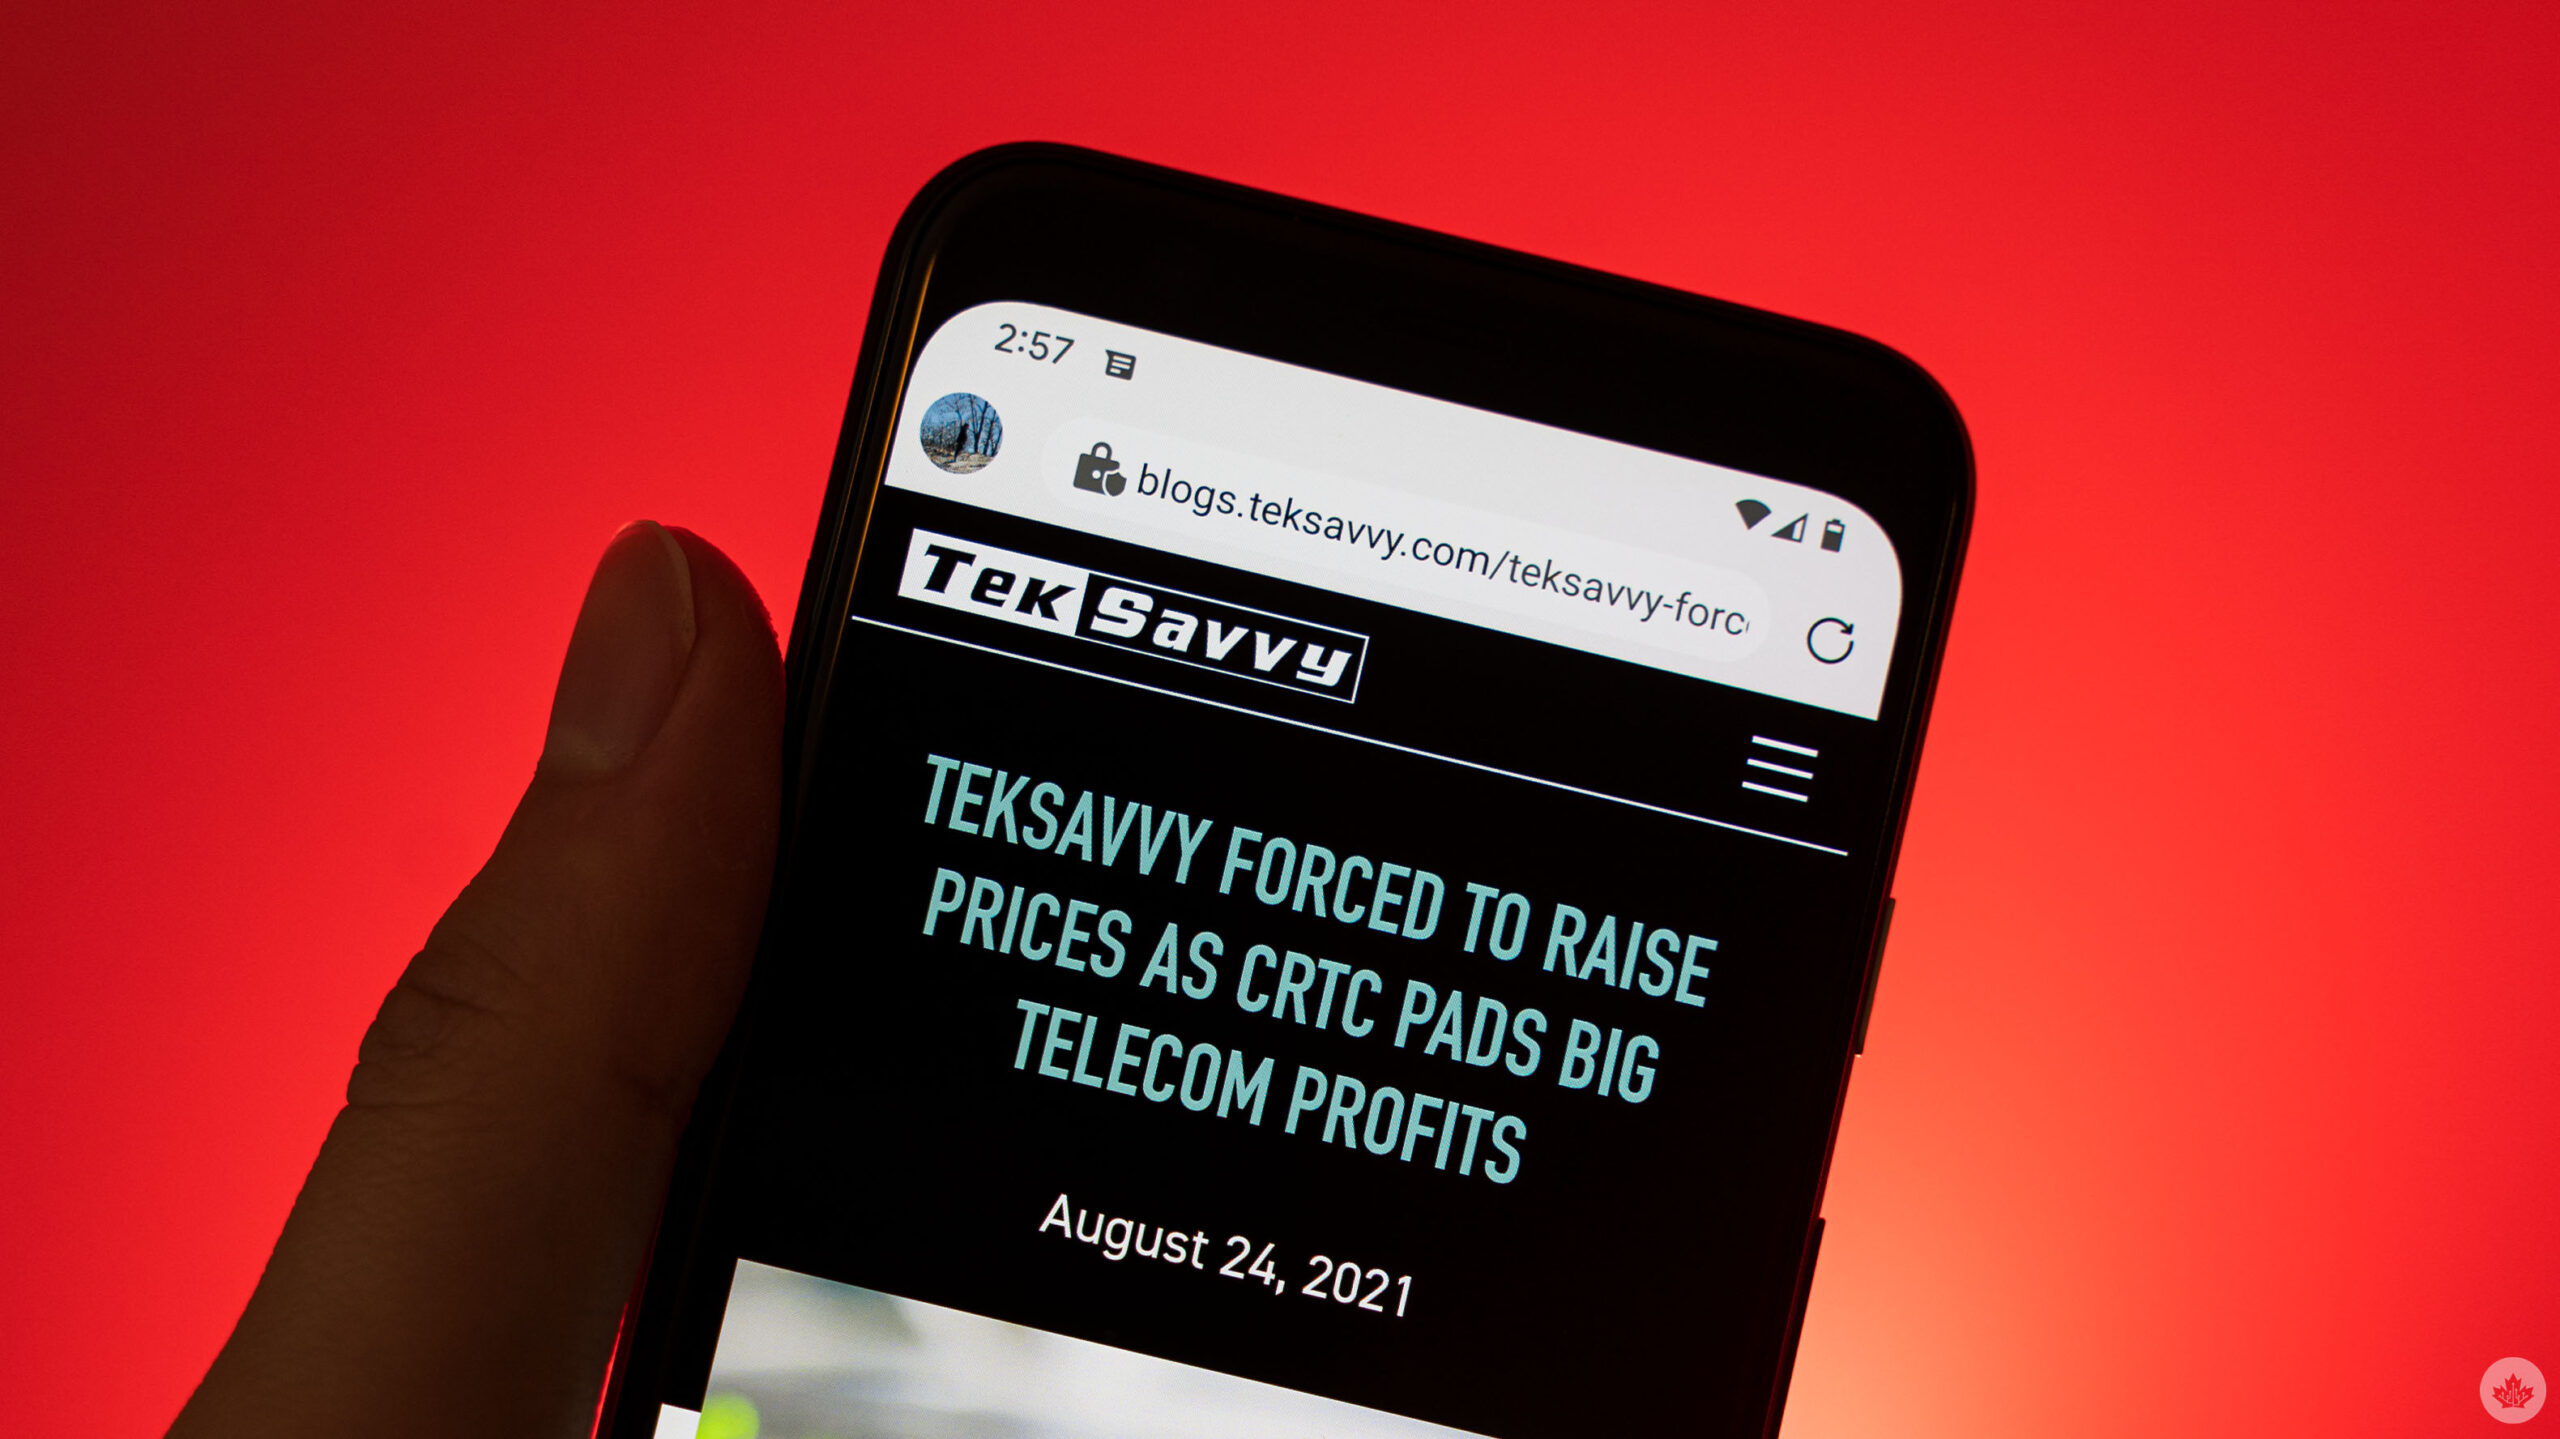 TekSavvy price increase blog